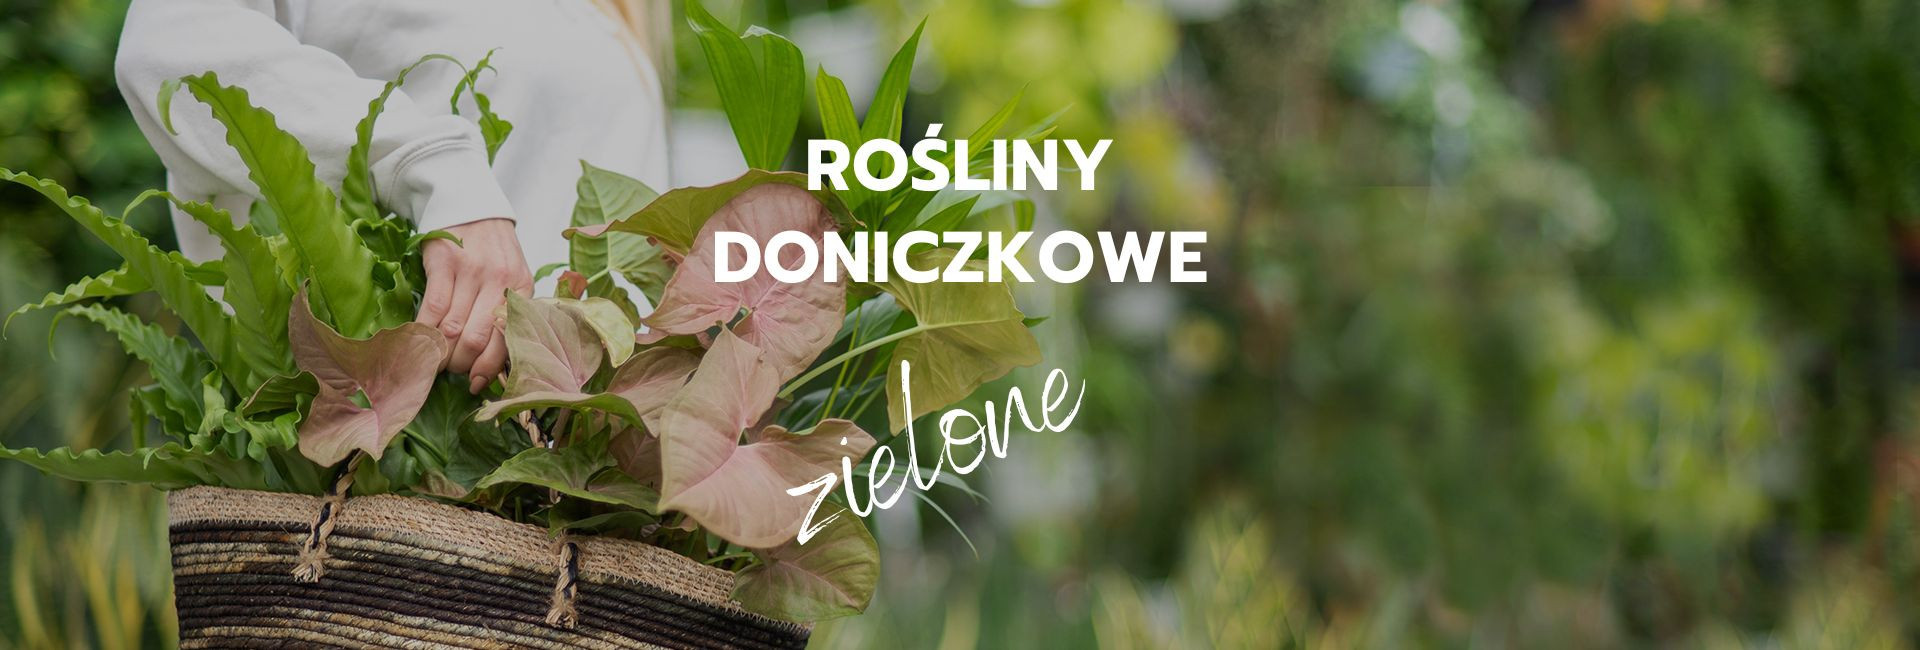 Kwiaty doniczkowe zielone - Tomaszewski